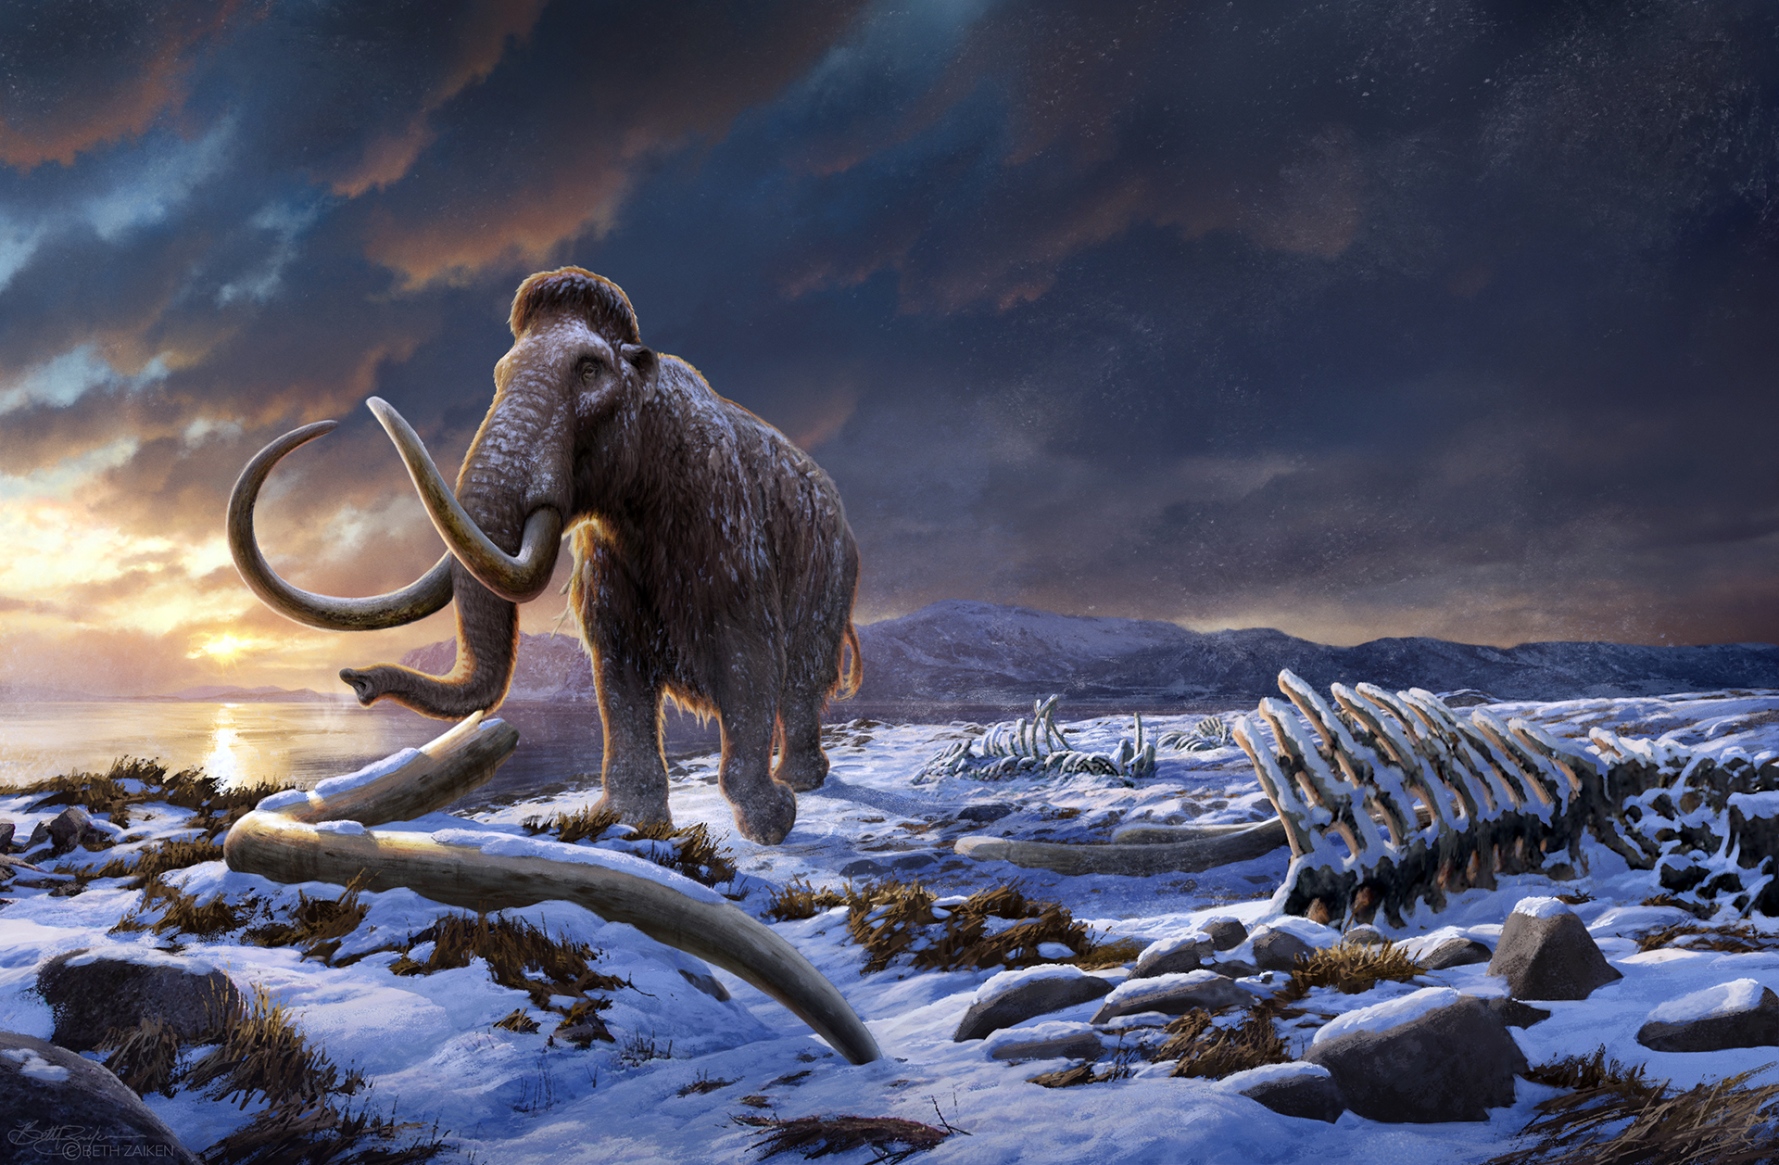 Uno studio svedese rivela gli ultimi tempi difficili vissuti dai mammut lanosi prima dell’estinzione